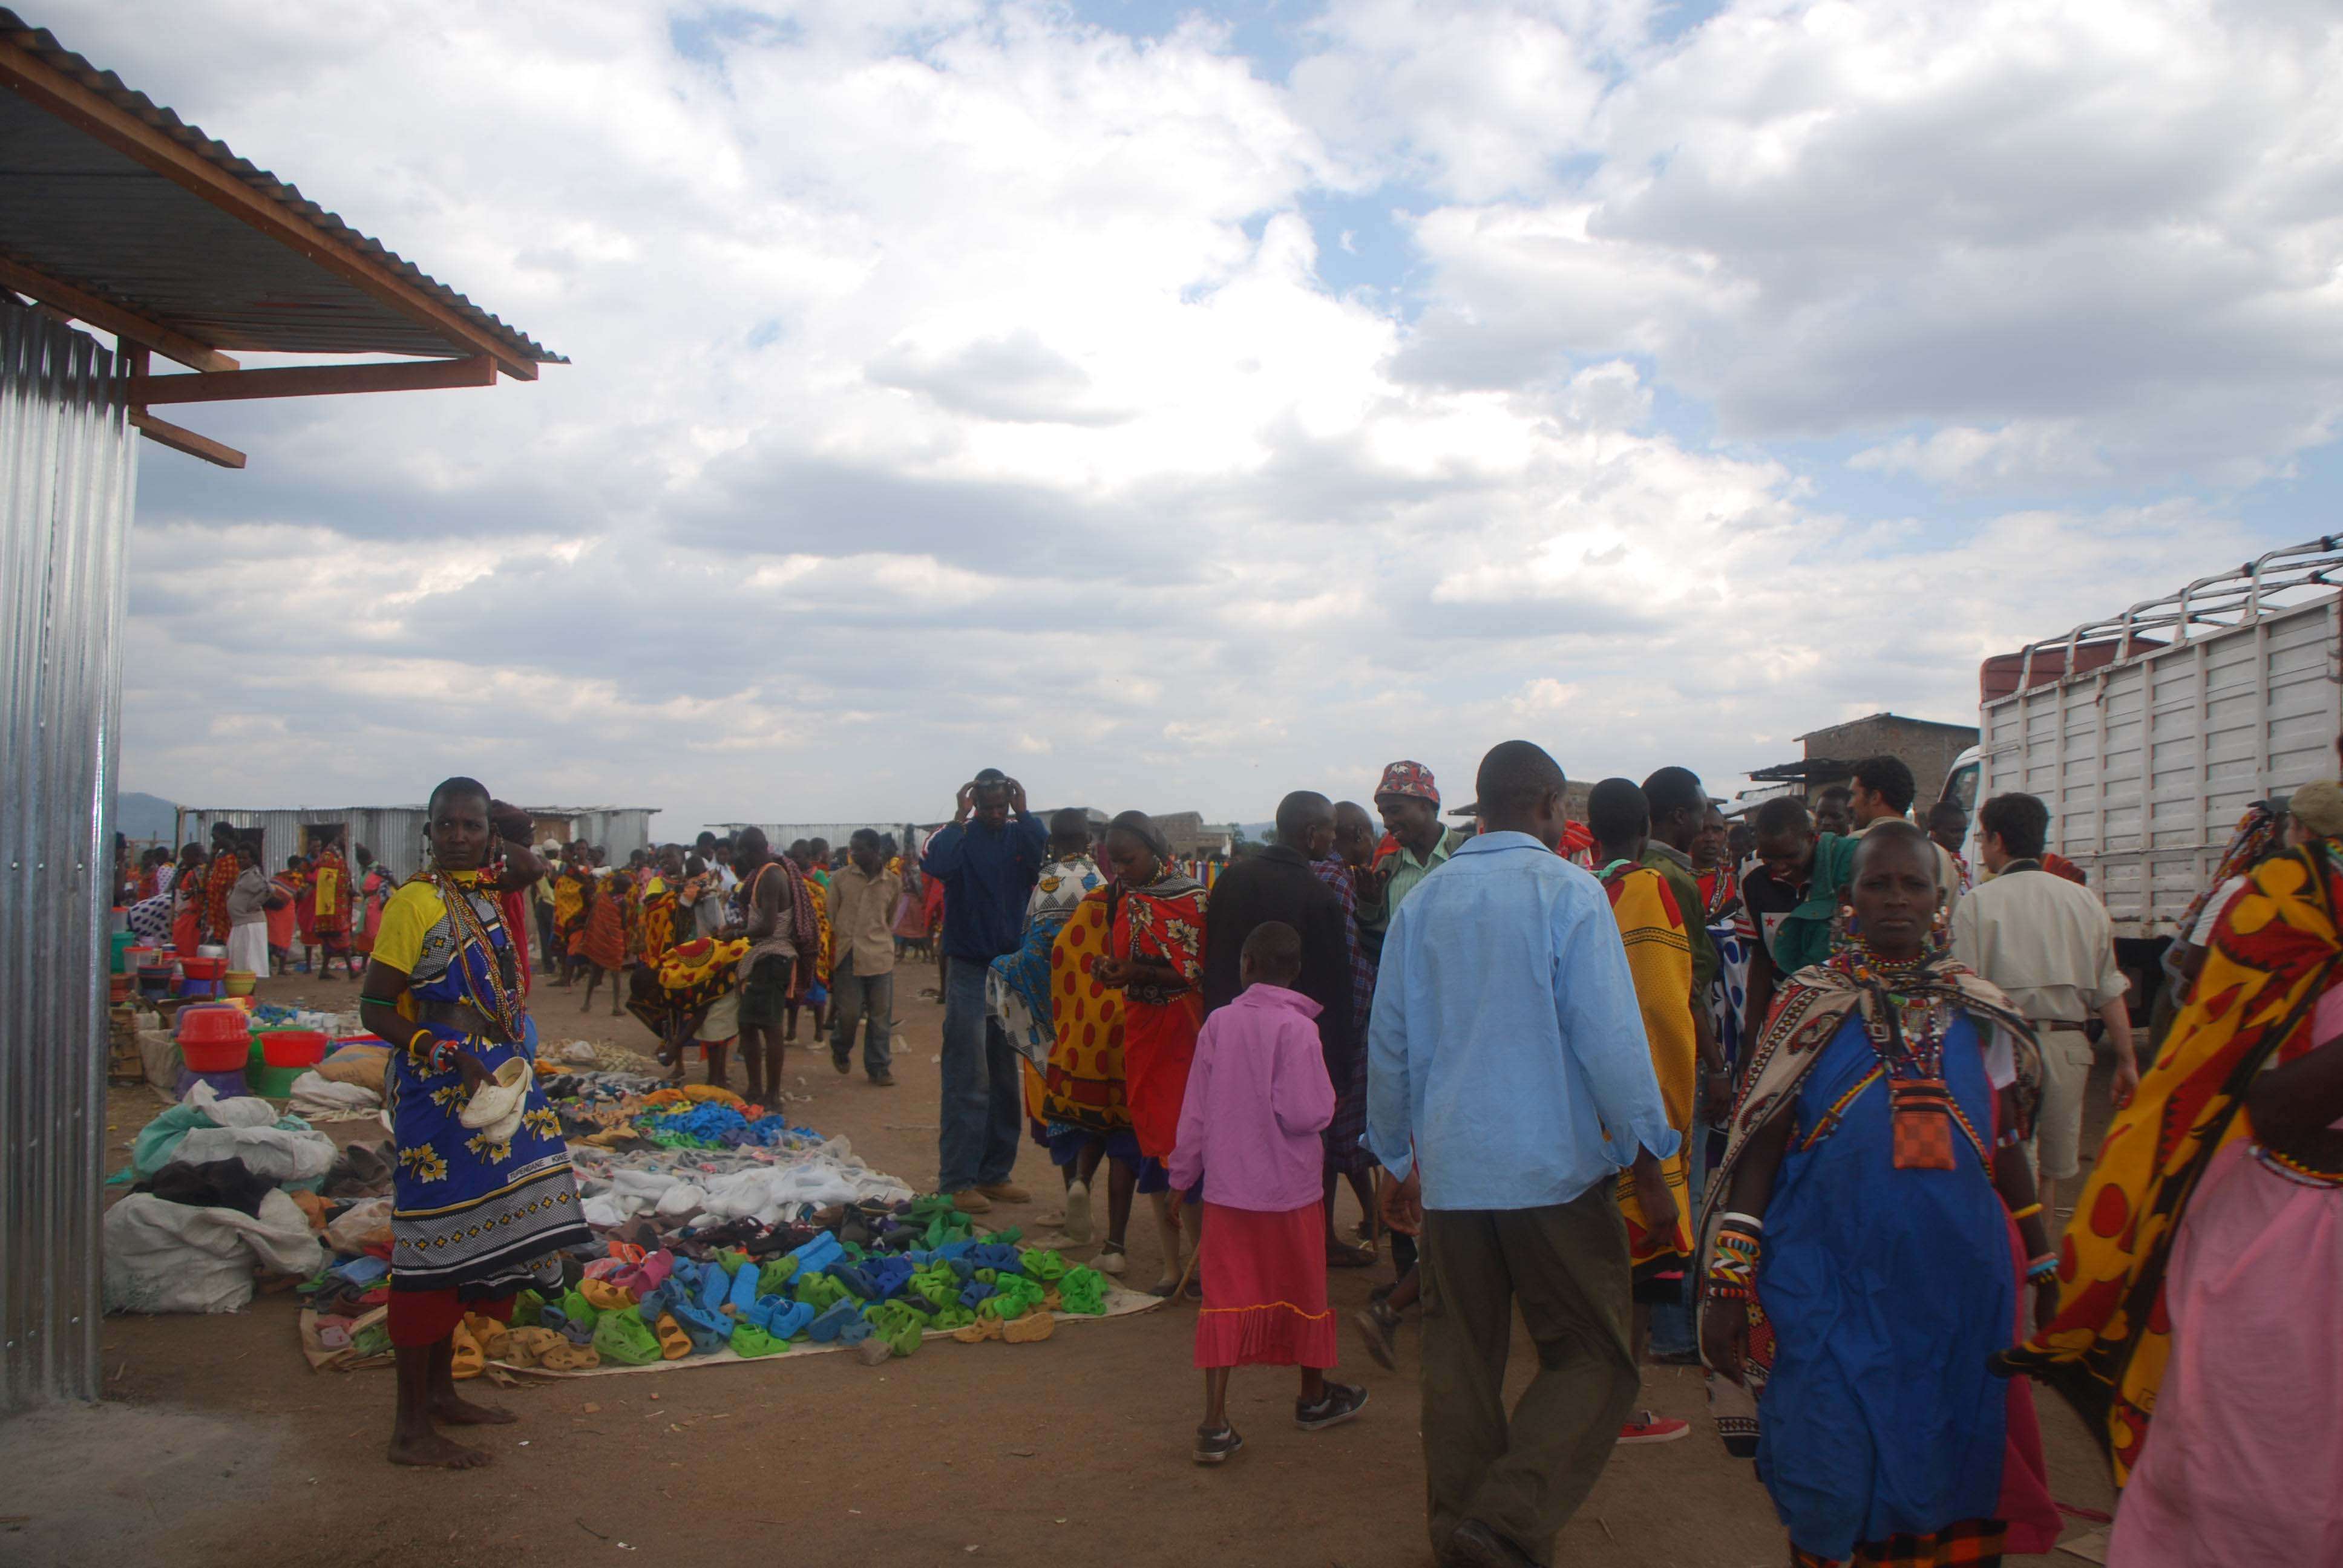 El mercado masai, un intento fallido de ver el cruce y algunas mariposas - Regreso al Mara - Kenia (20)